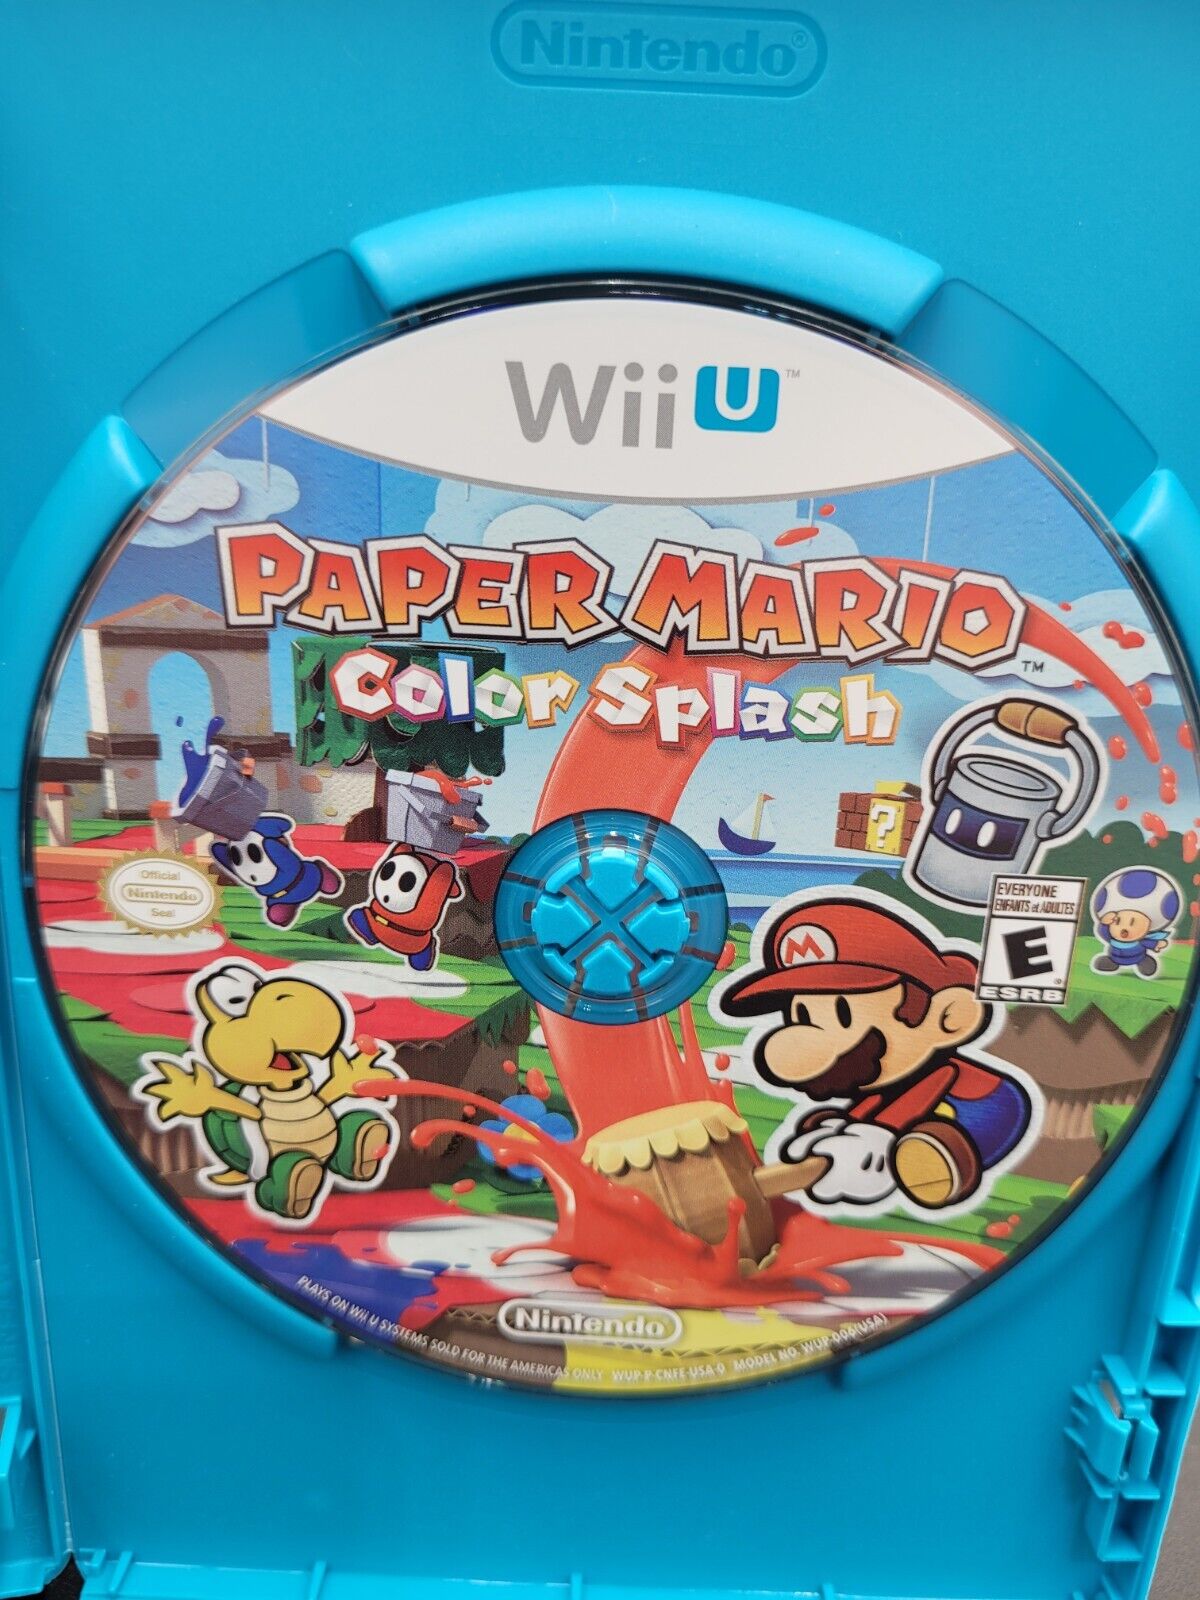 Paper Mario Color Splash - Wii U - Used